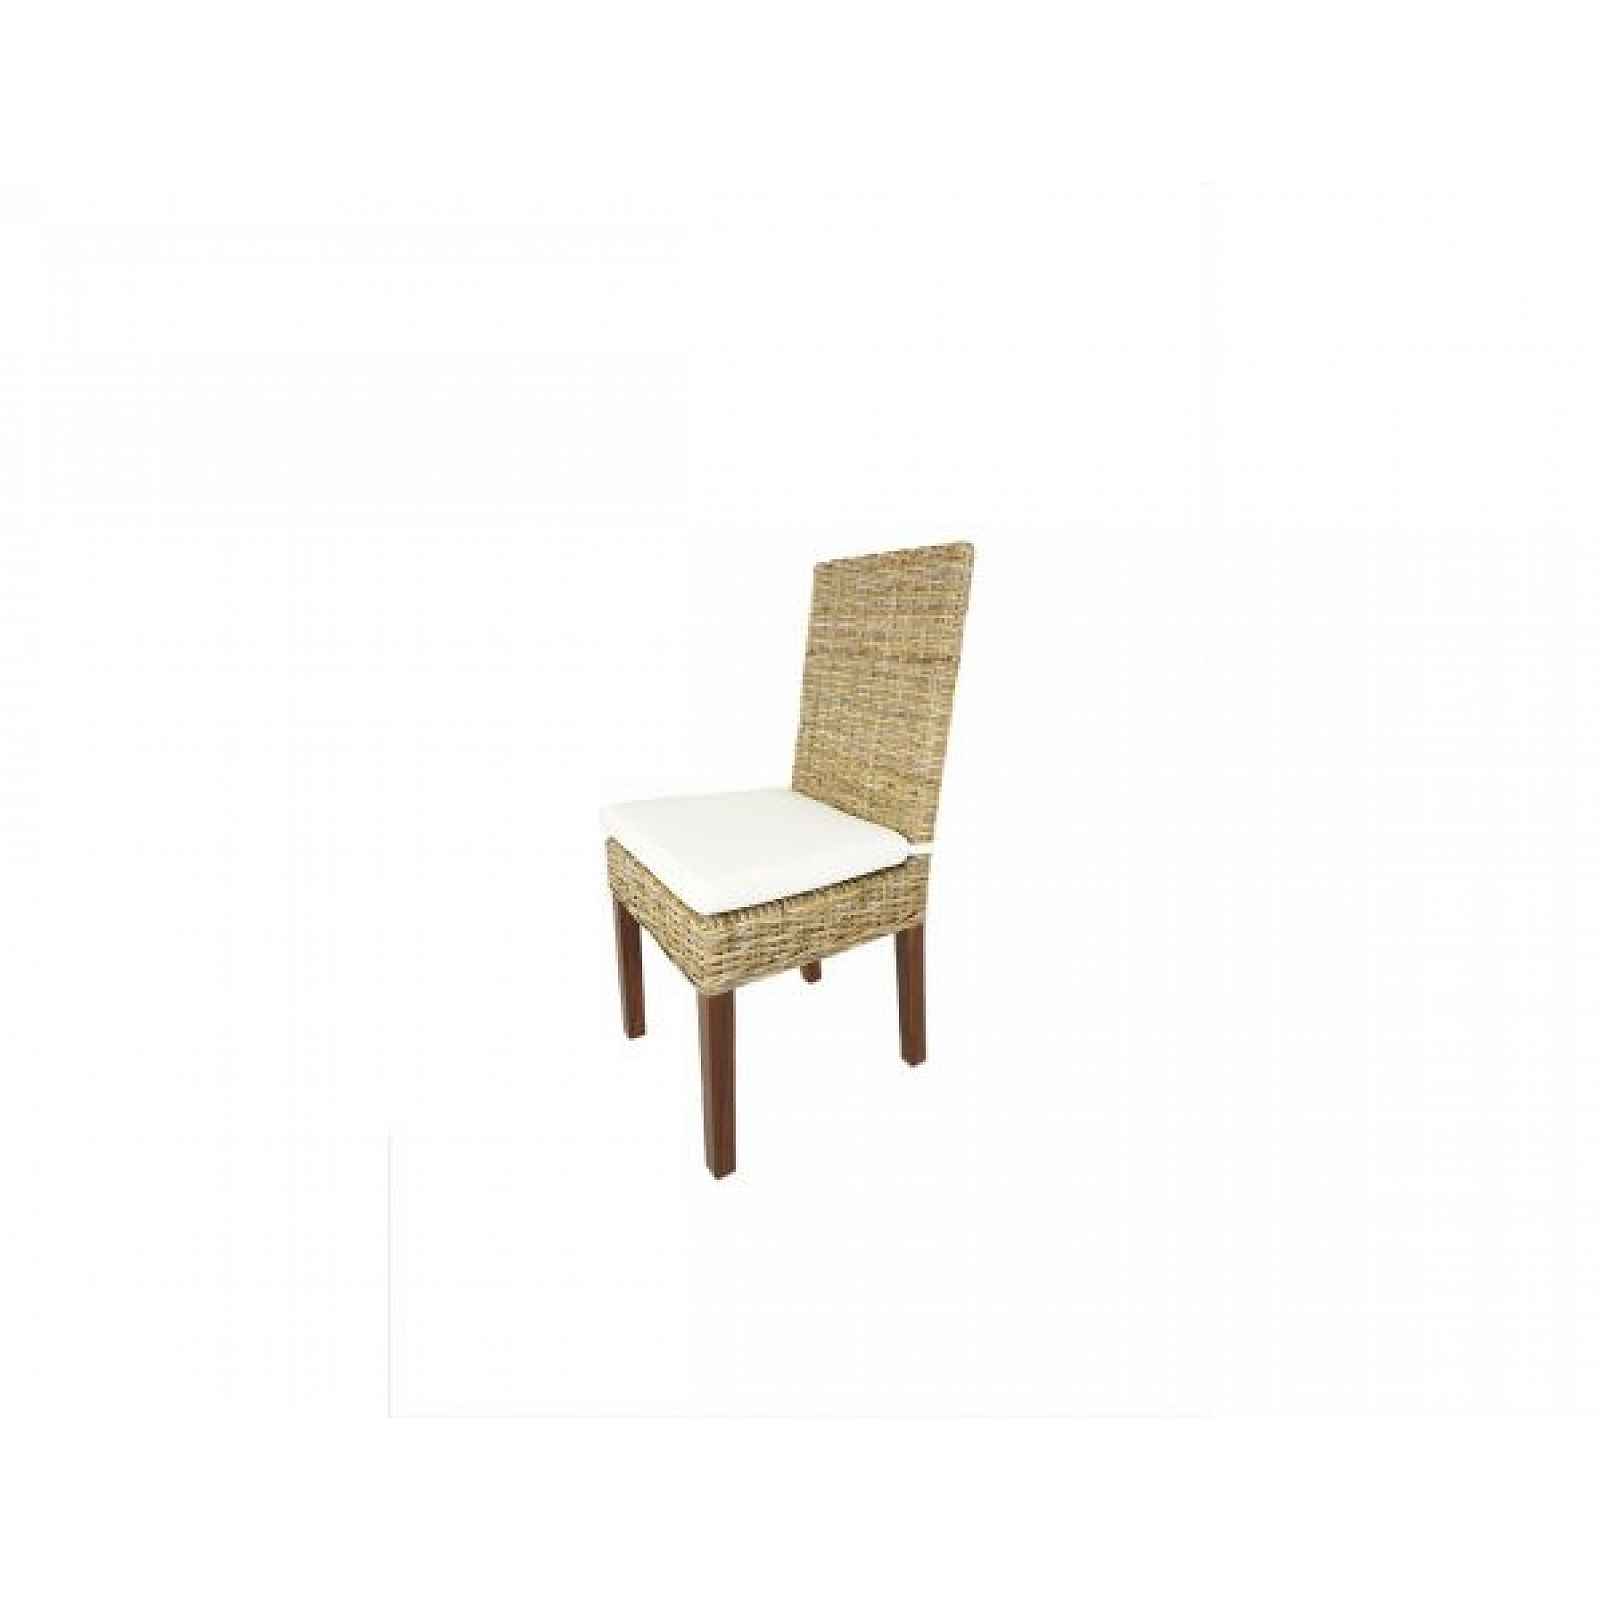 Ratanová židle SEATTLE, konstrukce mahagon, hnědá